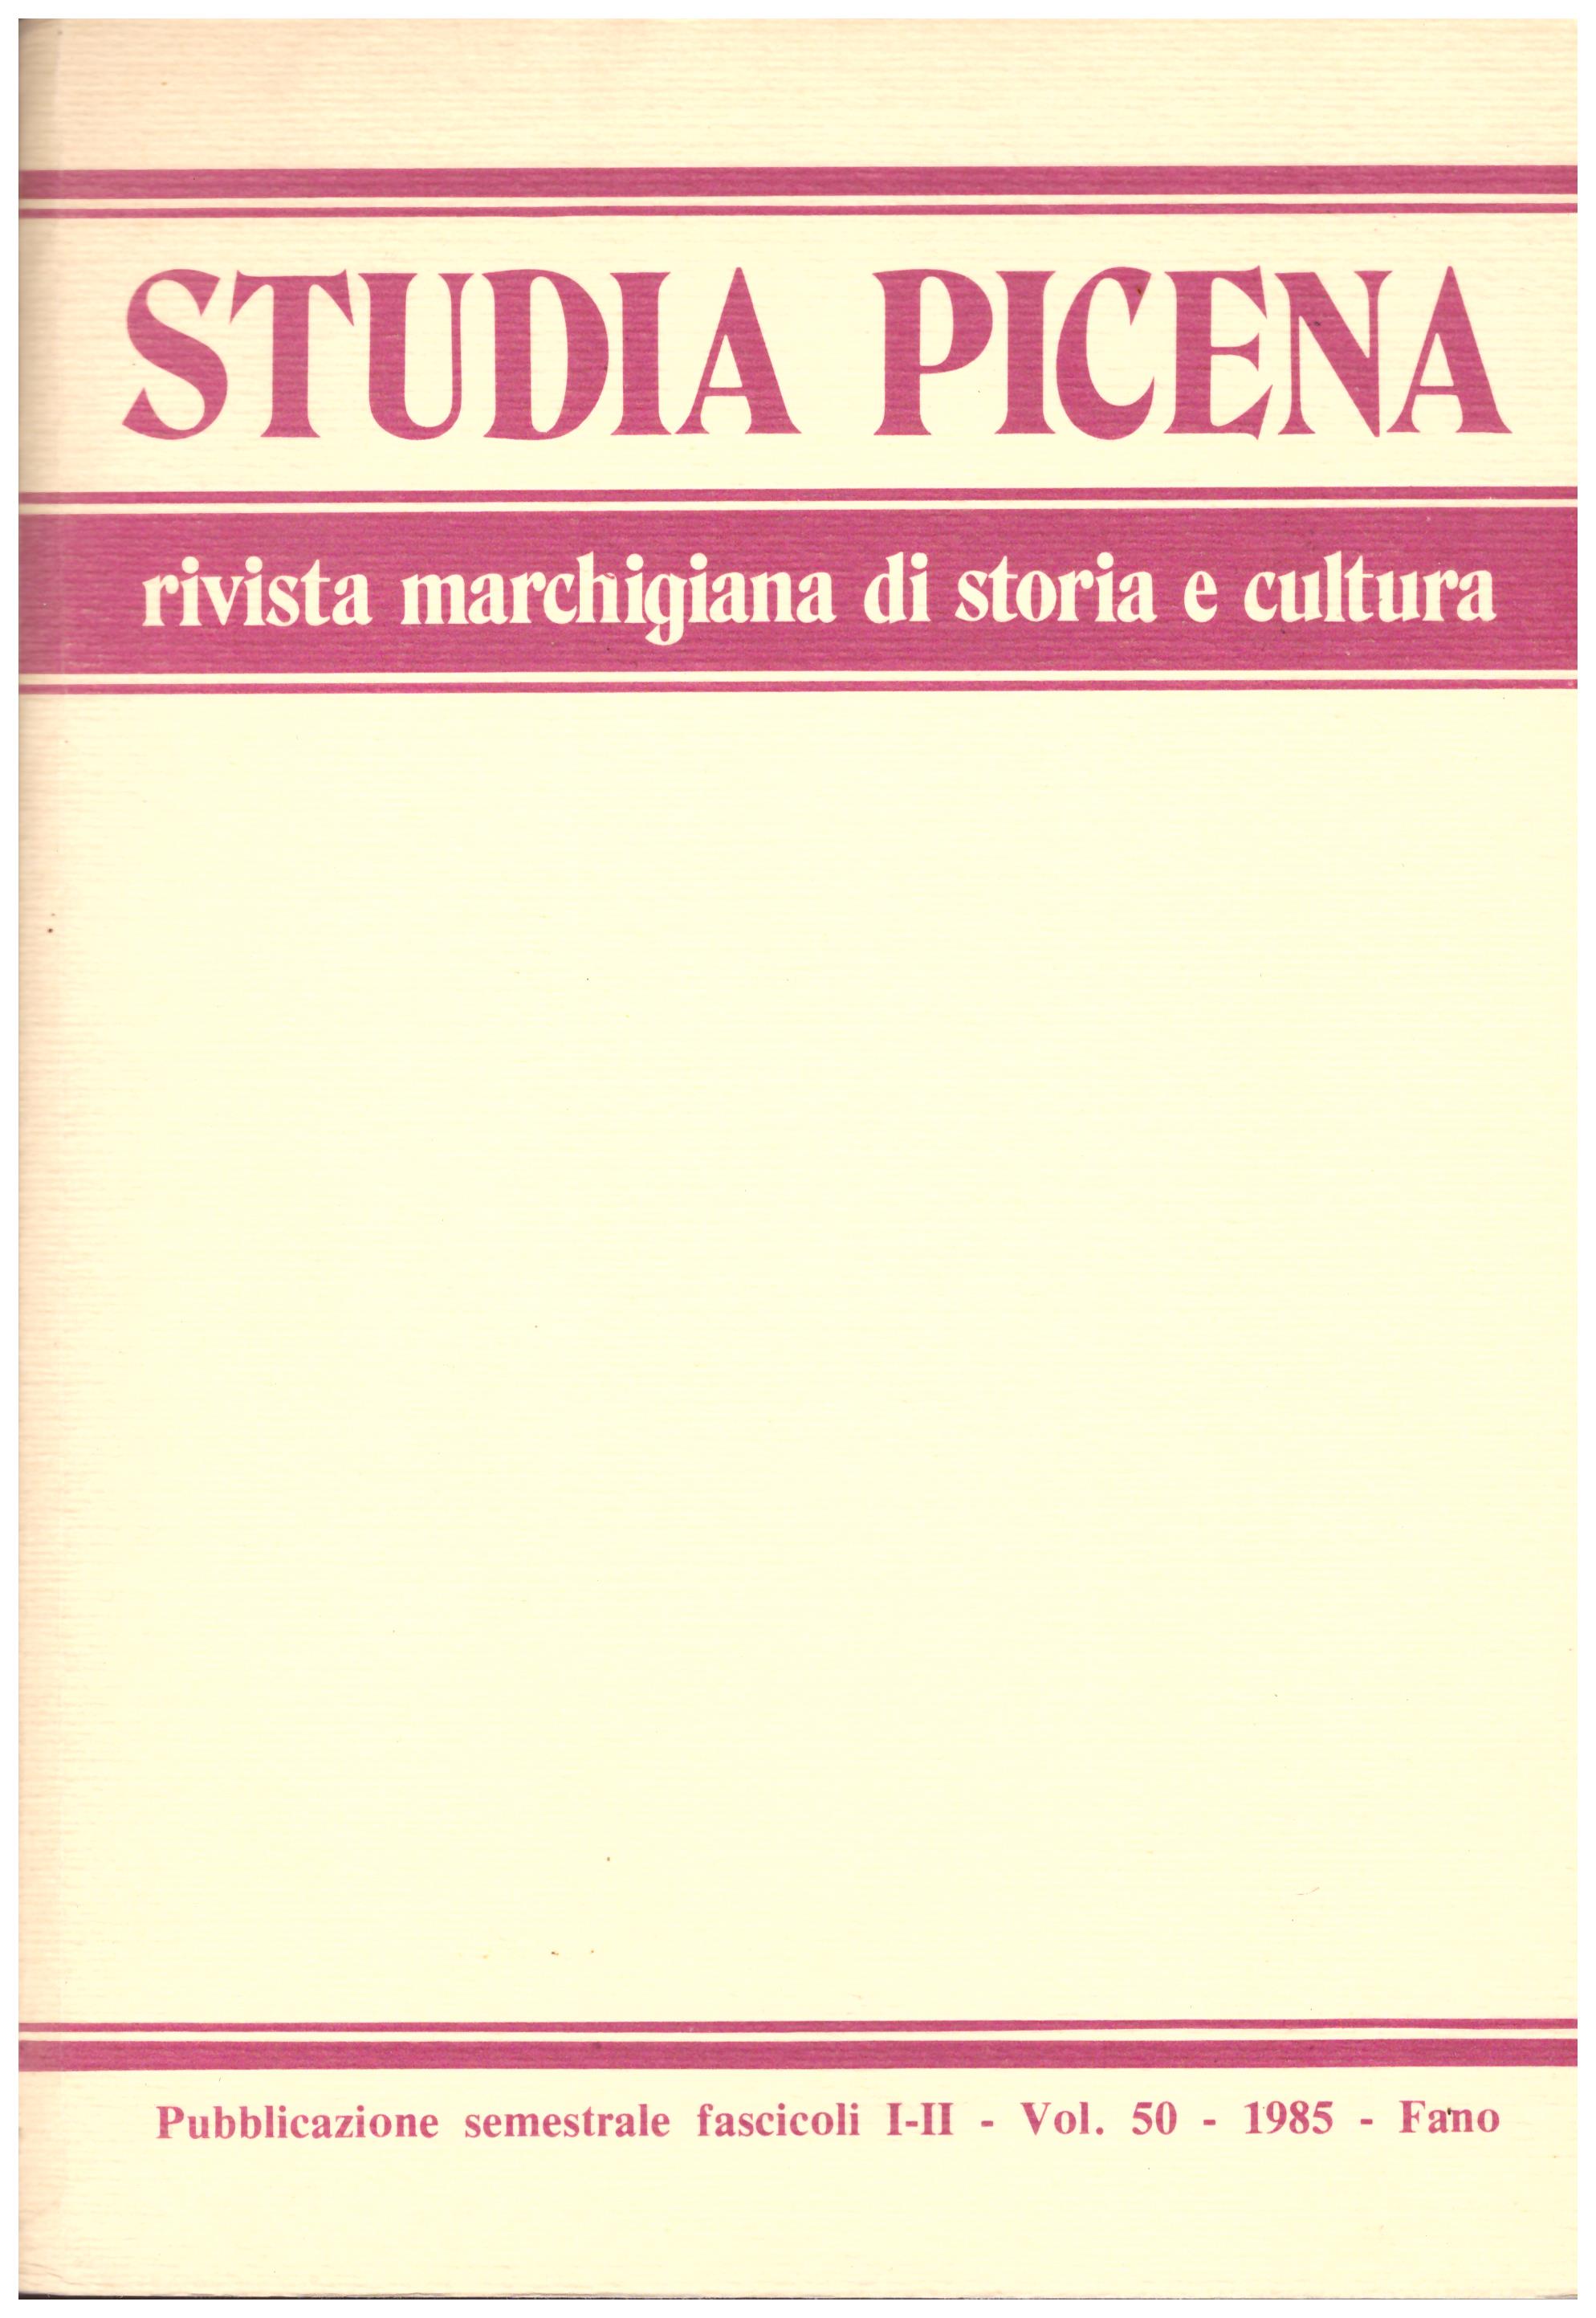 Titolo: Studia picena, Rivista marchigiana di storia e cultura vol.5 1985  Autore : AA.VV.  Editore: Offset stampa Fano 1985